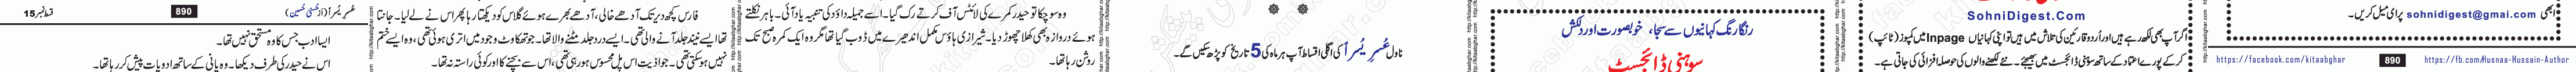 Usri Yusra last episode 23 Urdu Novel by Husna Hussain